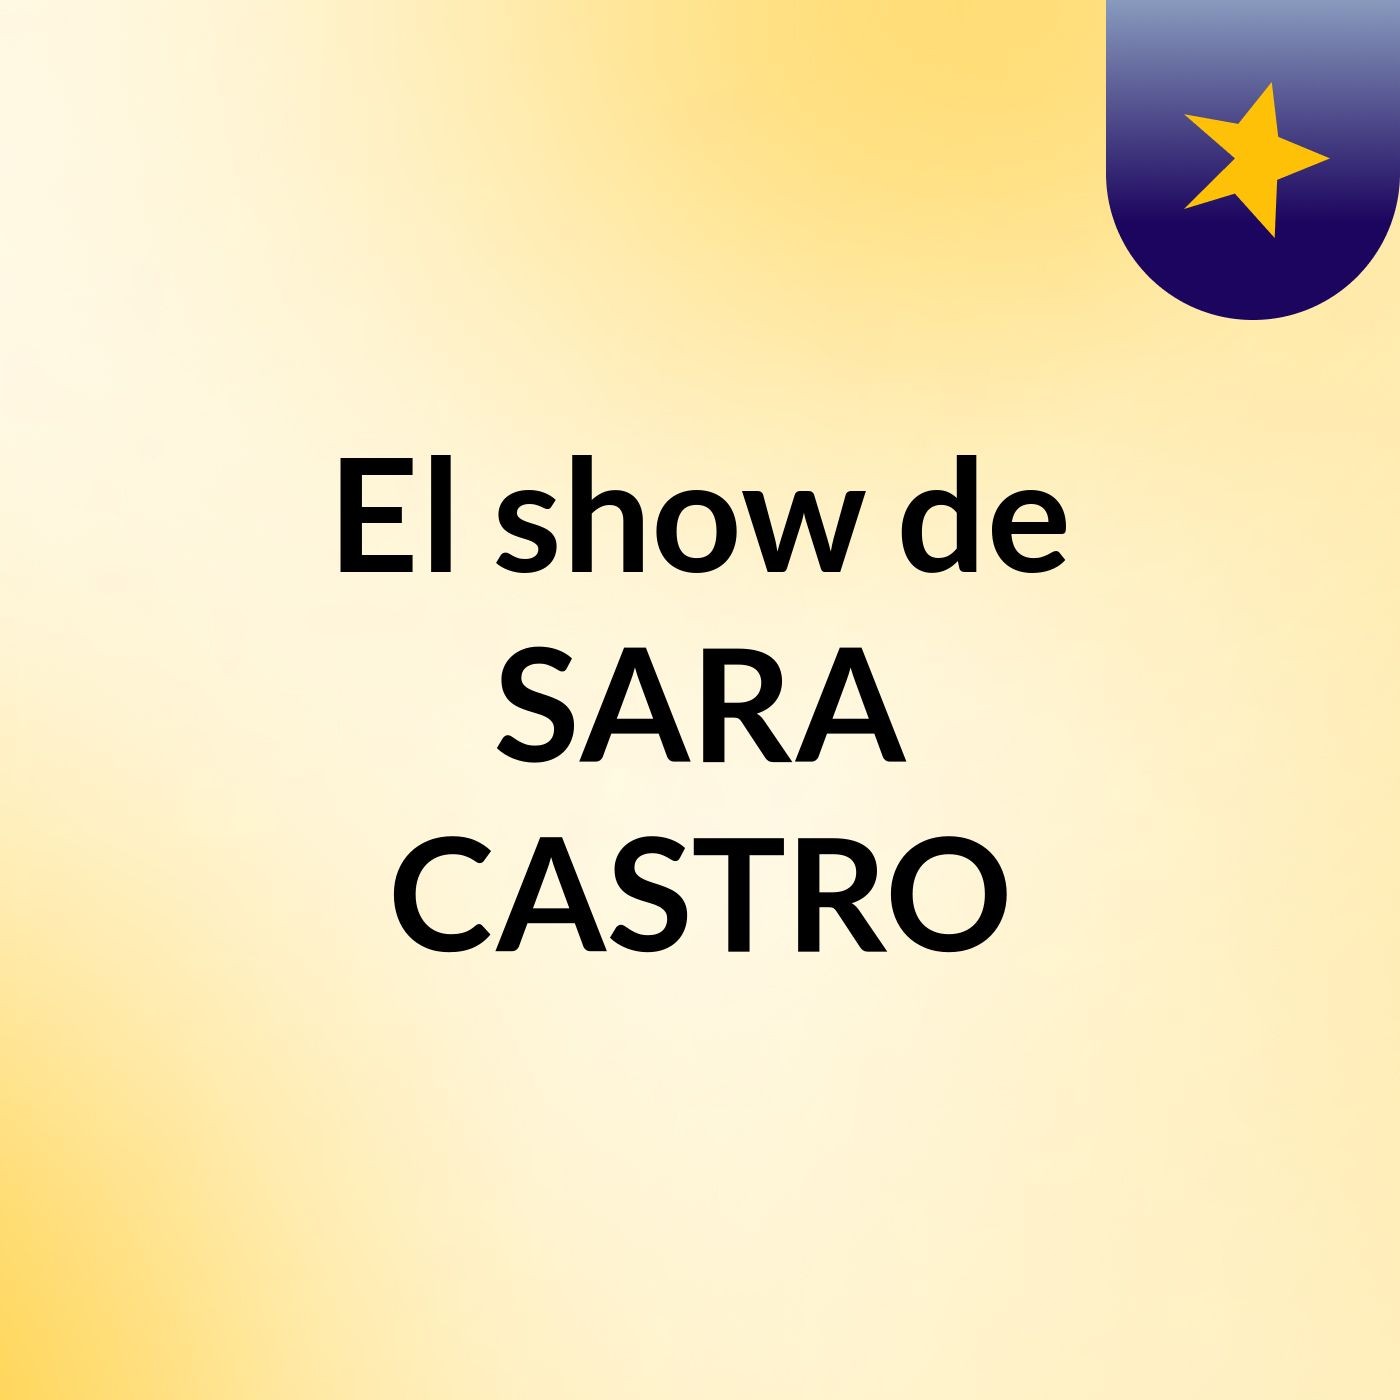 El show de SARA CASTRO